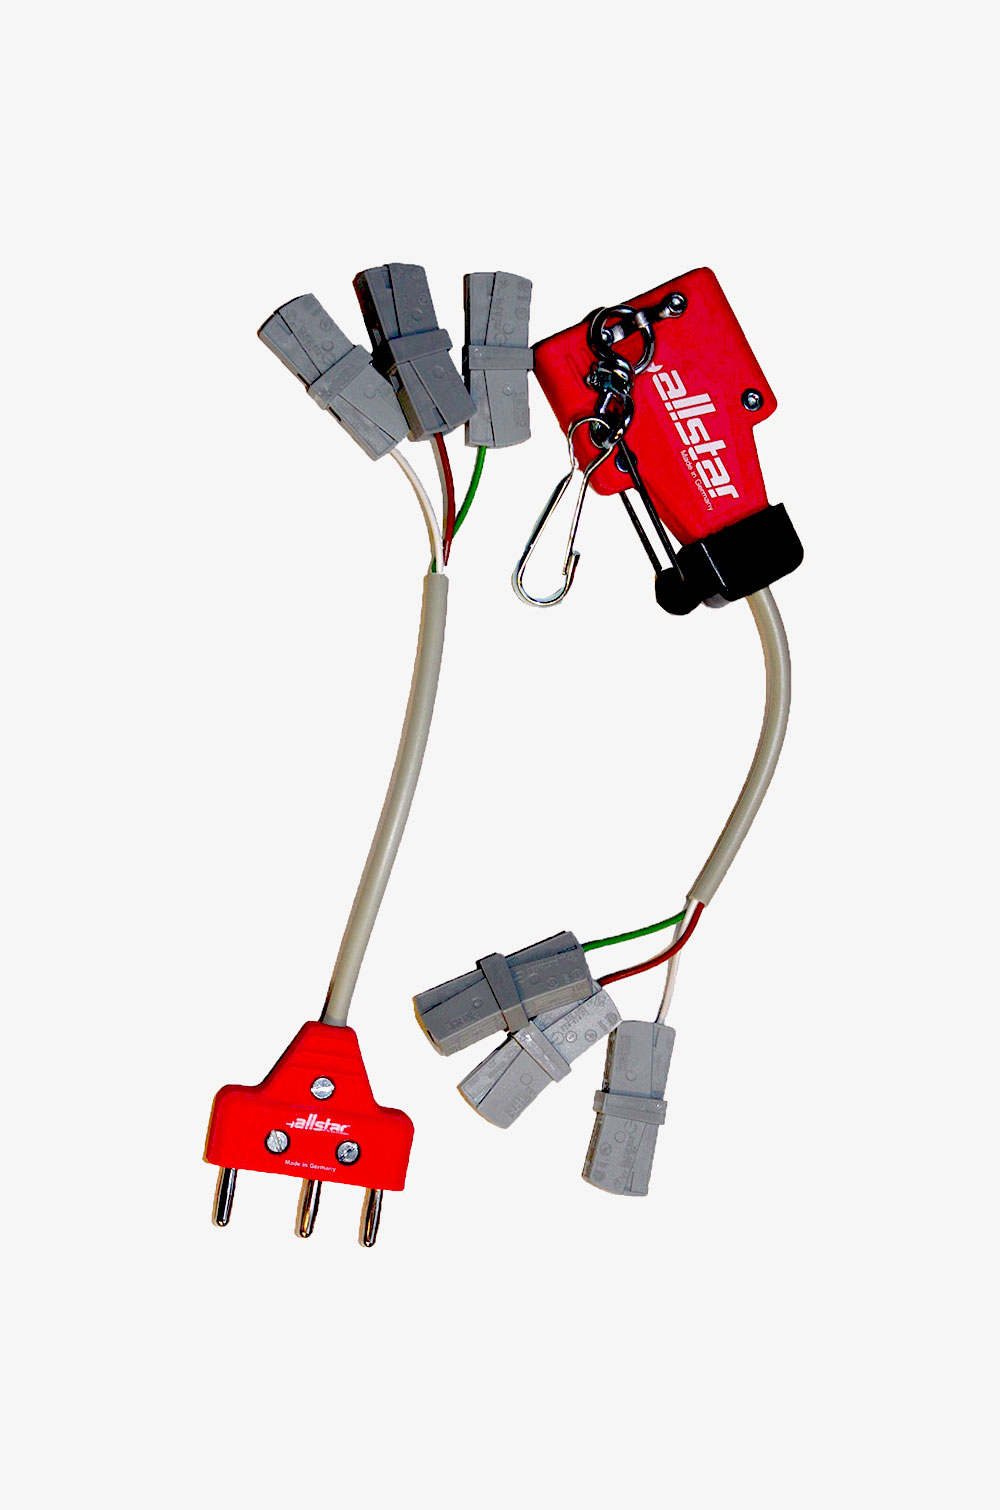 Messzubehör für TBOX One Universalprüfgerät (bestehend aus elektr. isolierten Kabeln mit Anschlusstücken)